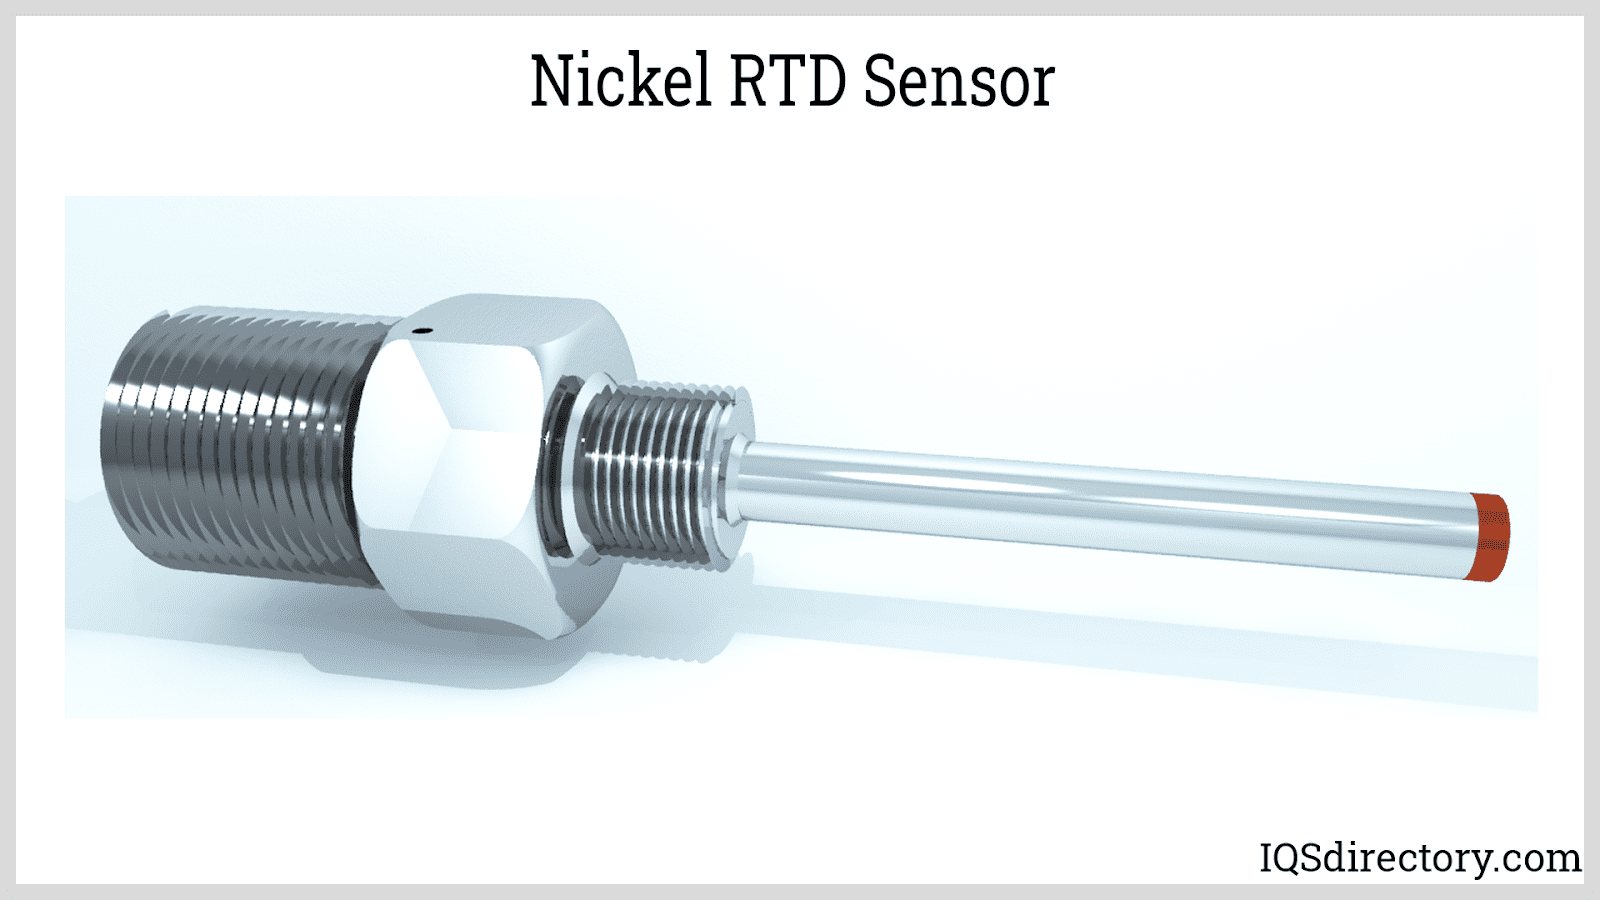 RTD Sensors